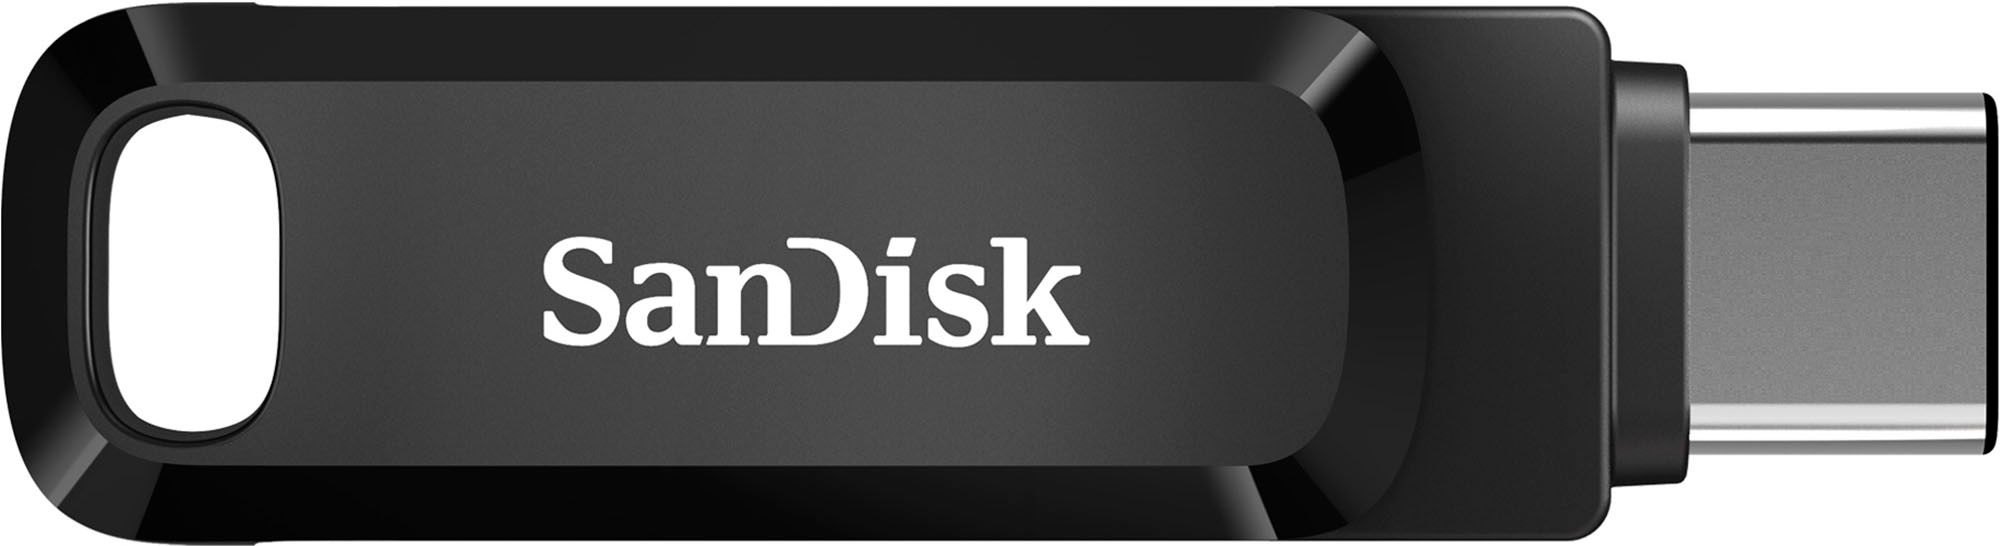 SanDisk 512GB Cruzer Ultra Fit USB 3.1 Flash Drive